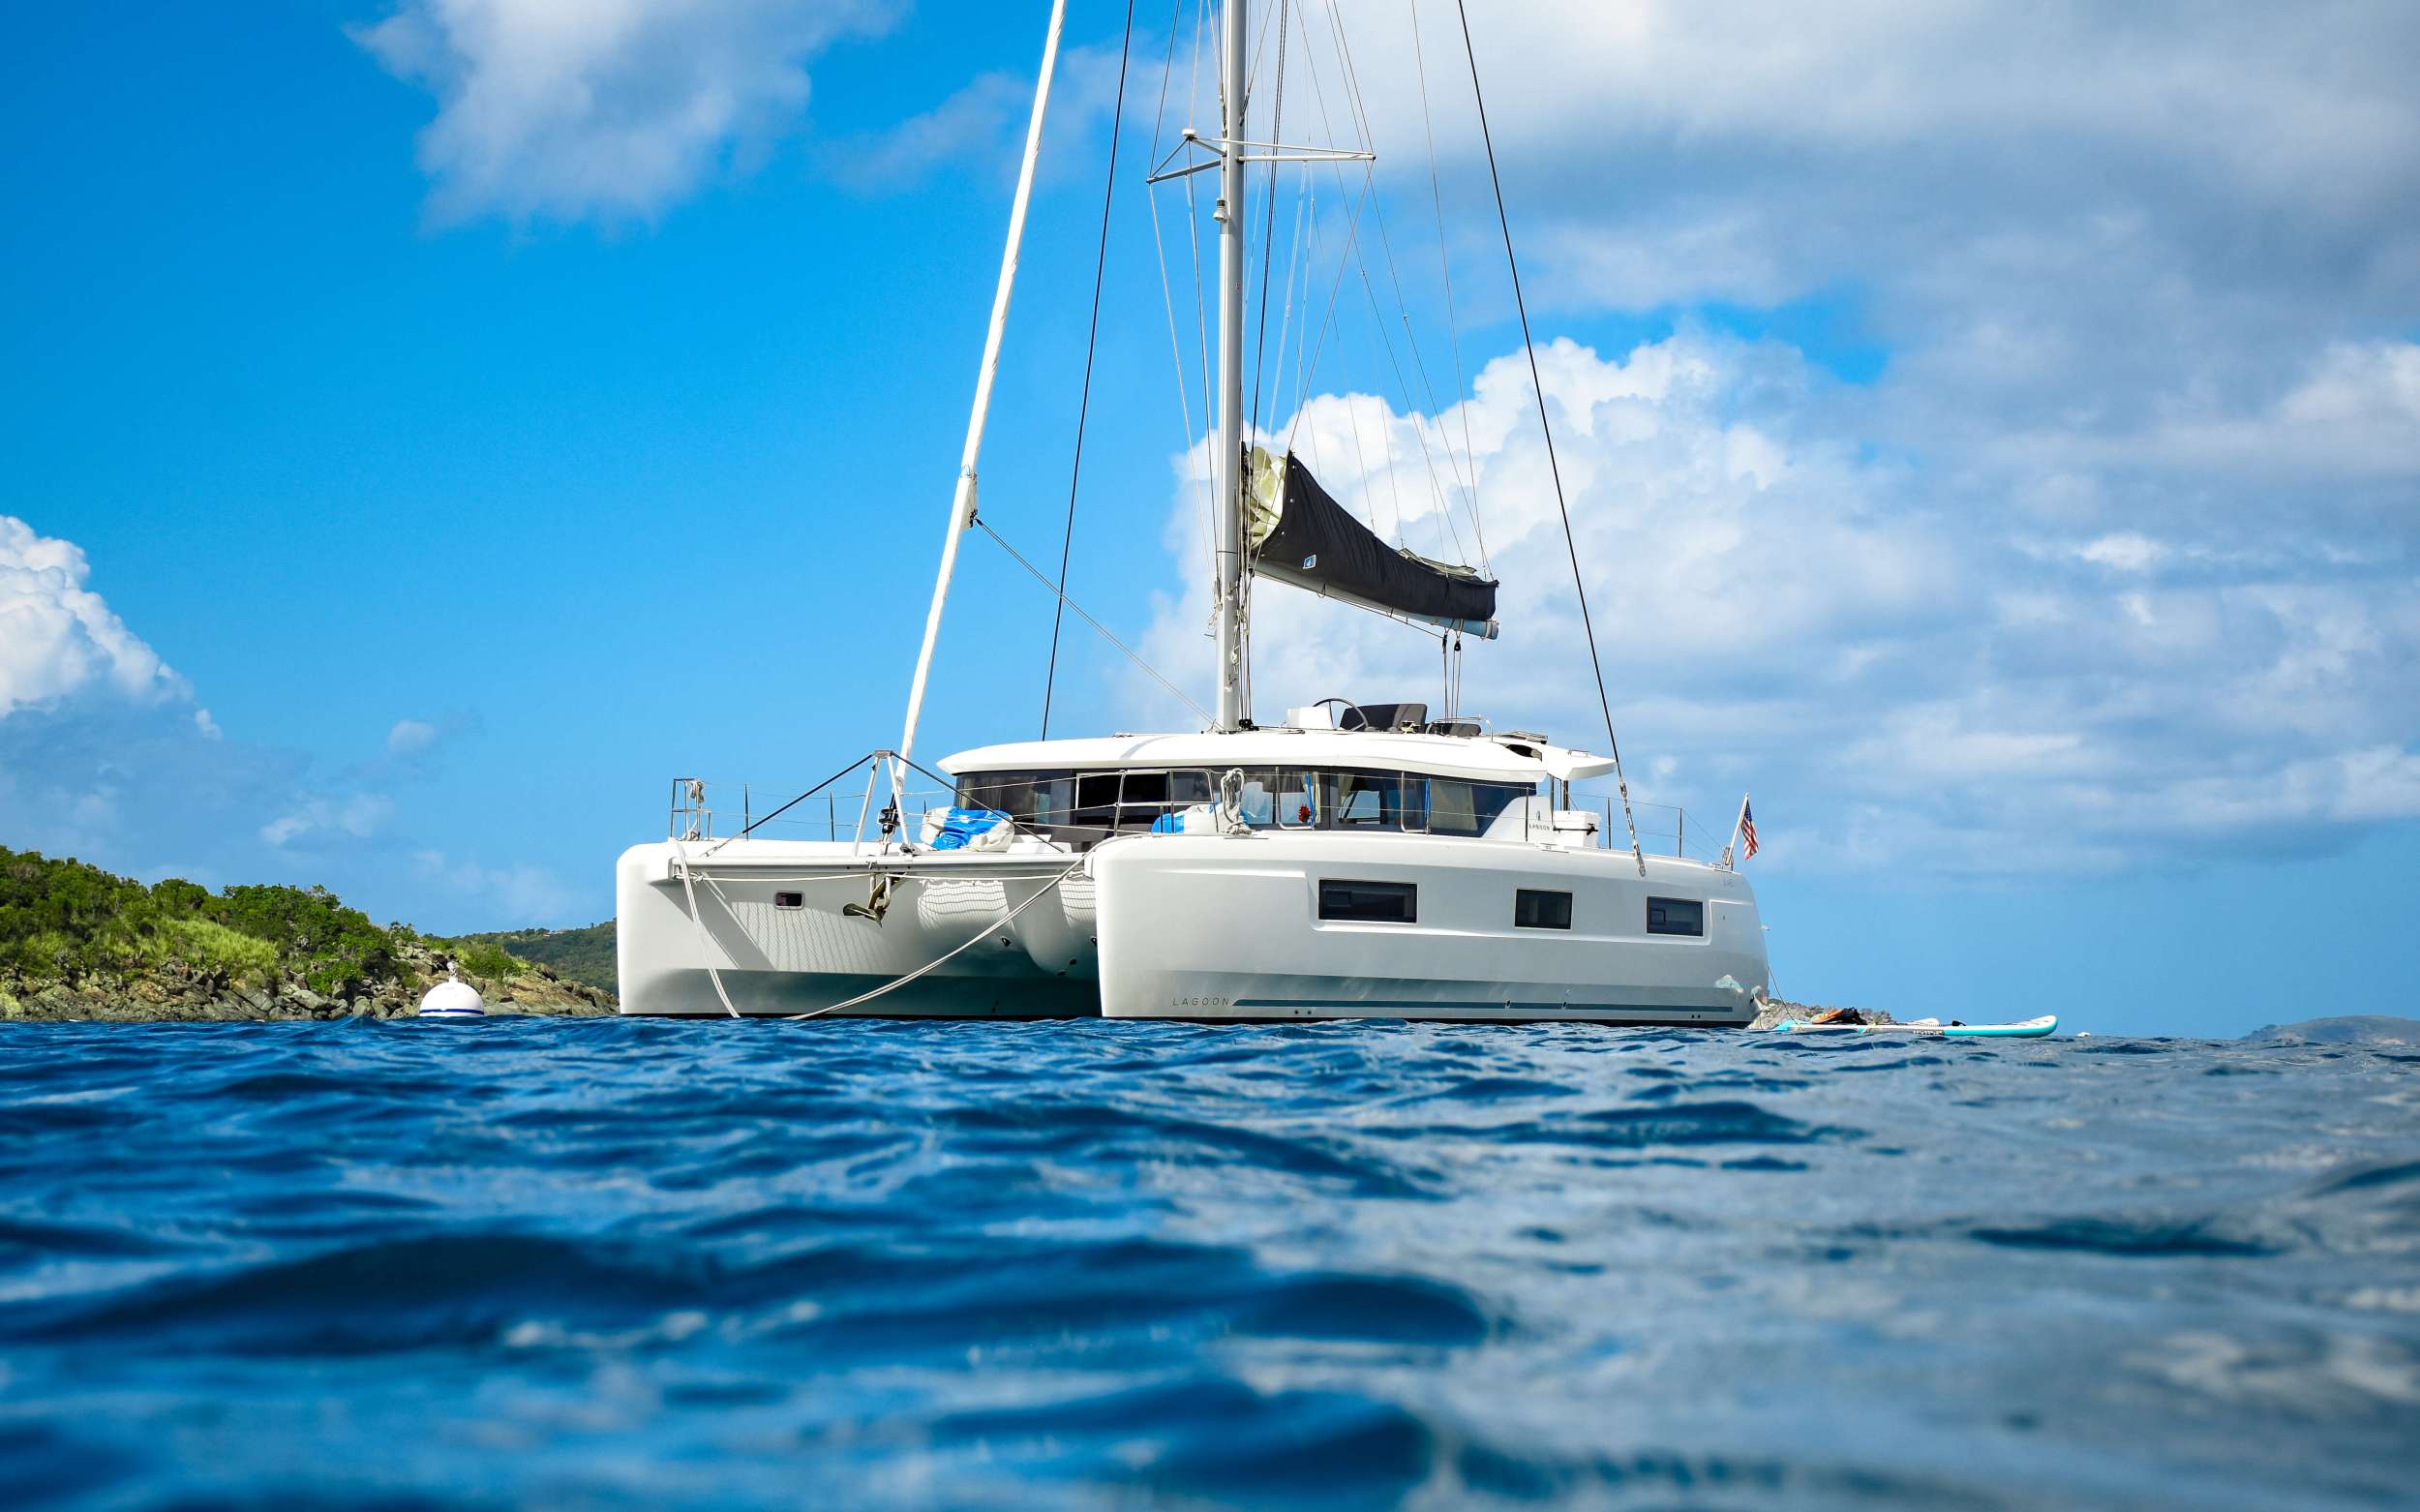 CELAVIE - Yacht Charter Nelsons Dockyard & Boat hire in Caribbean 2